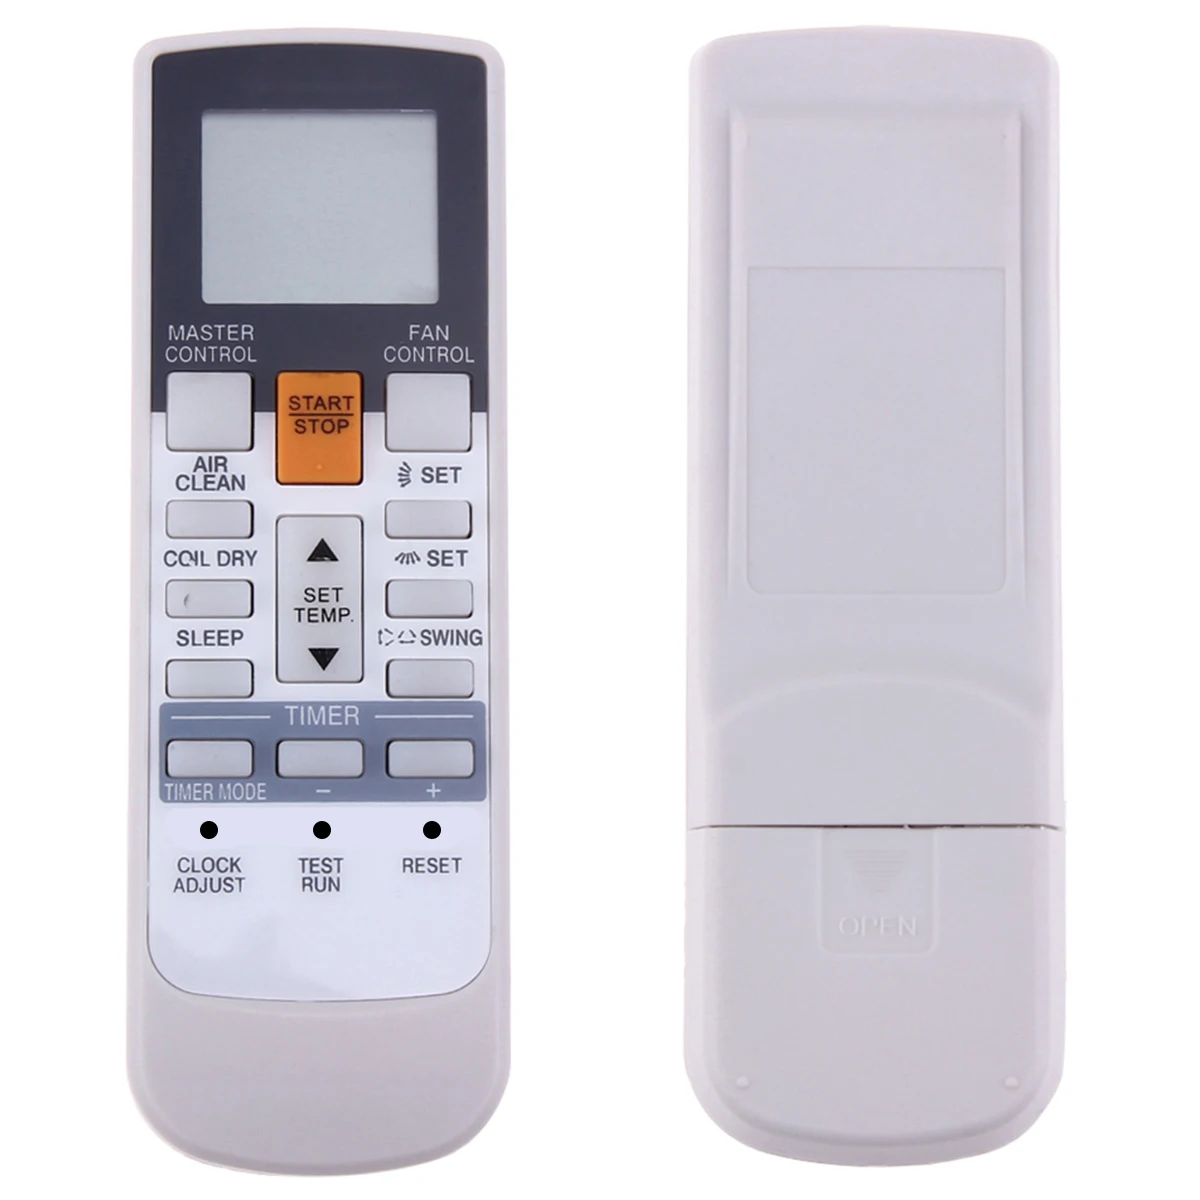 

Remote Control Replacement Remote Controller For Fujitsu Air Conditioner AR-RY12 AR-RY13 AR-RY3 AR-RY4 AR-RY14 AR-RY11